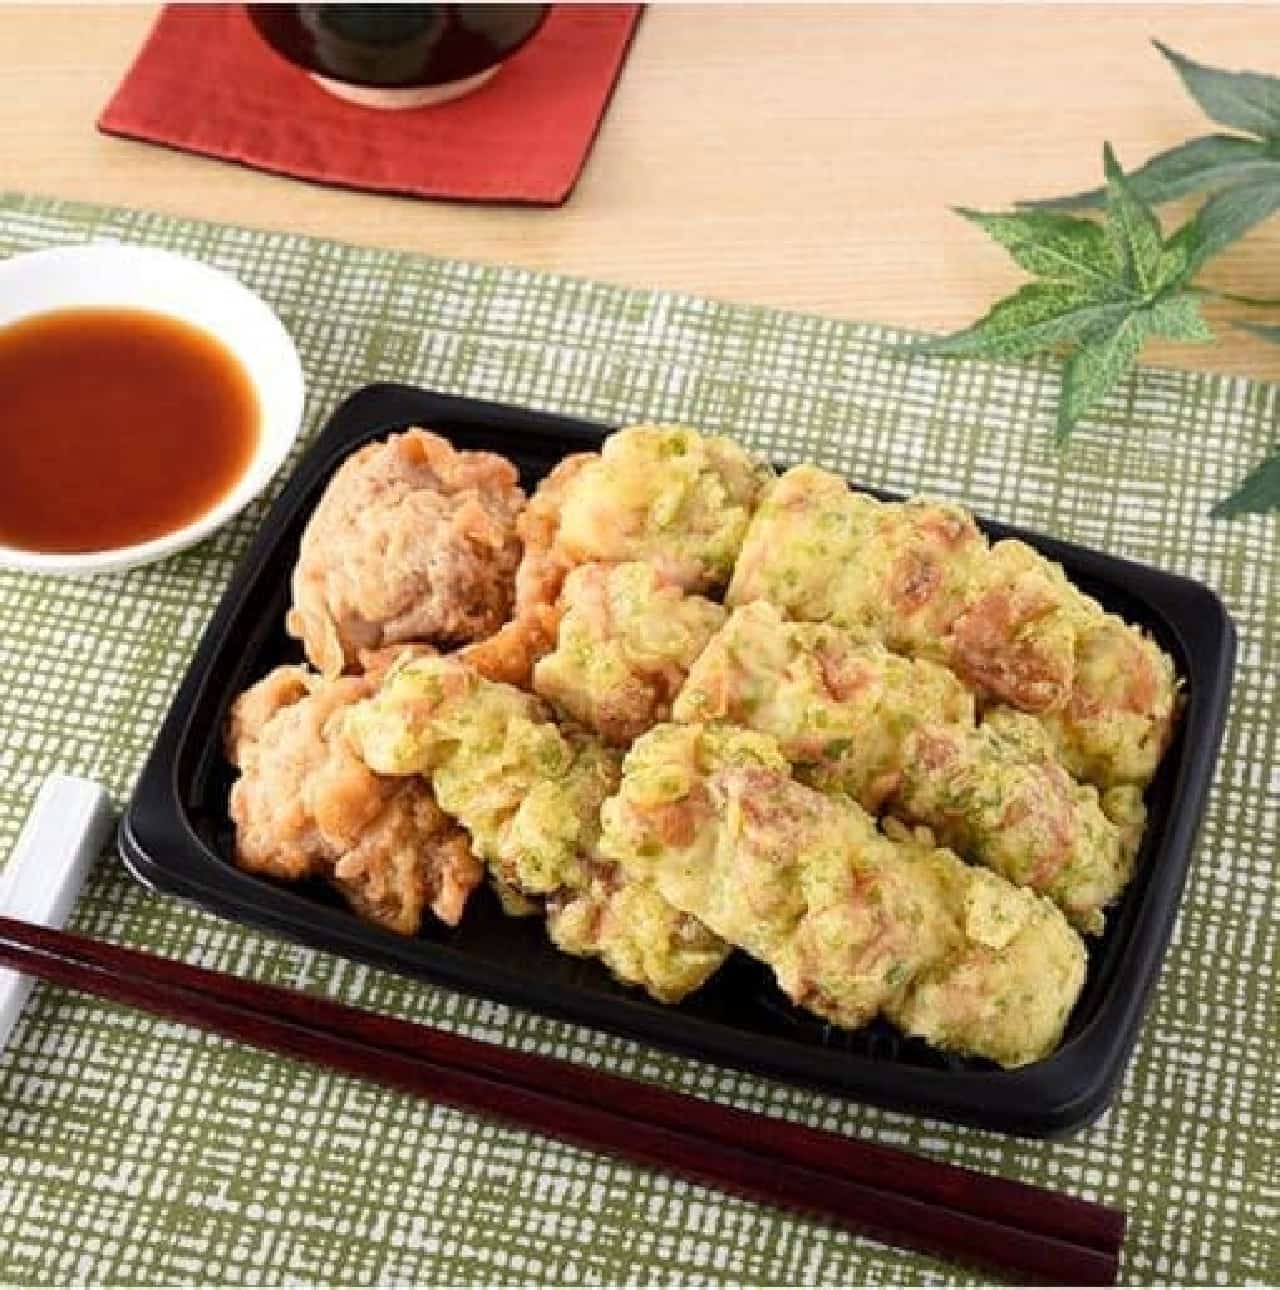 FamilyMart "Chikuwa Isobe Fried & Chicken Ten"